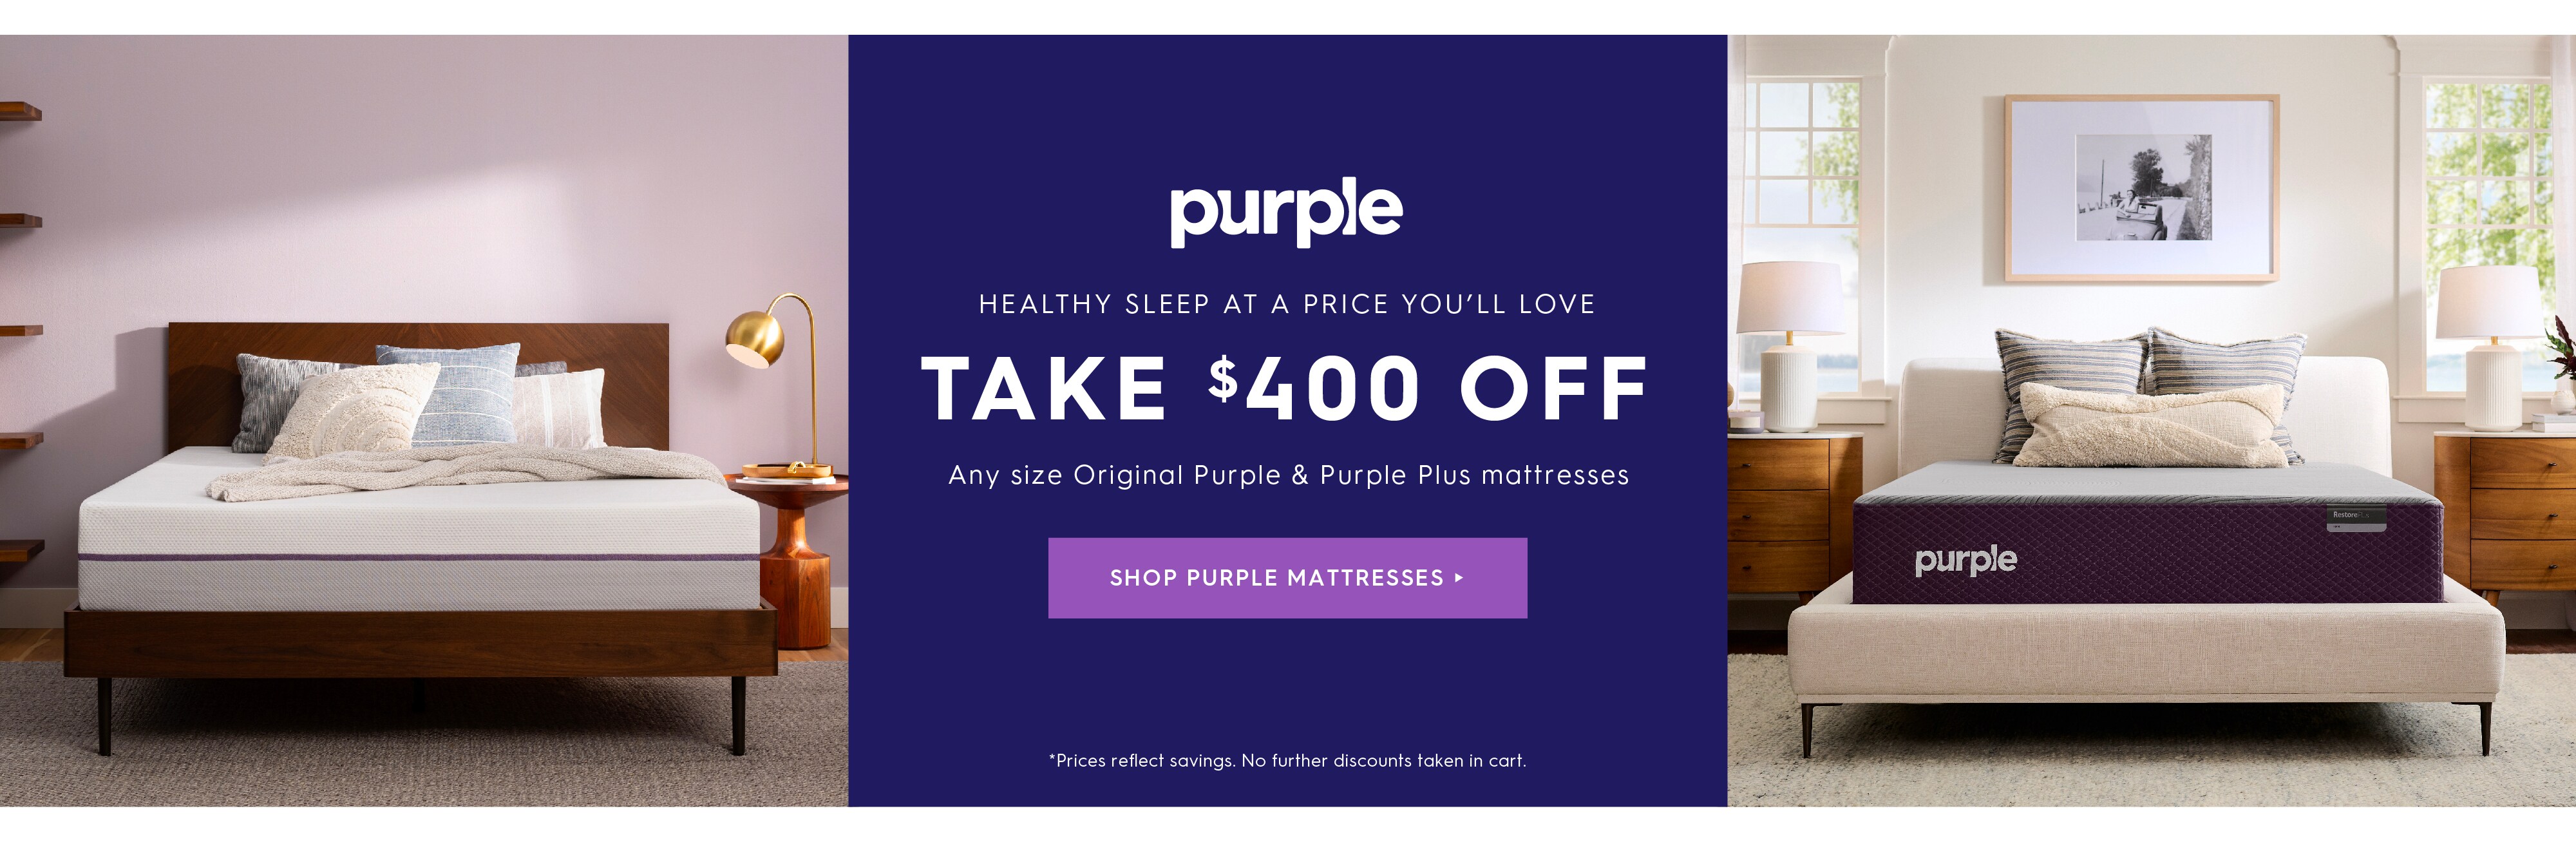 Shop Purple Mattress deals.